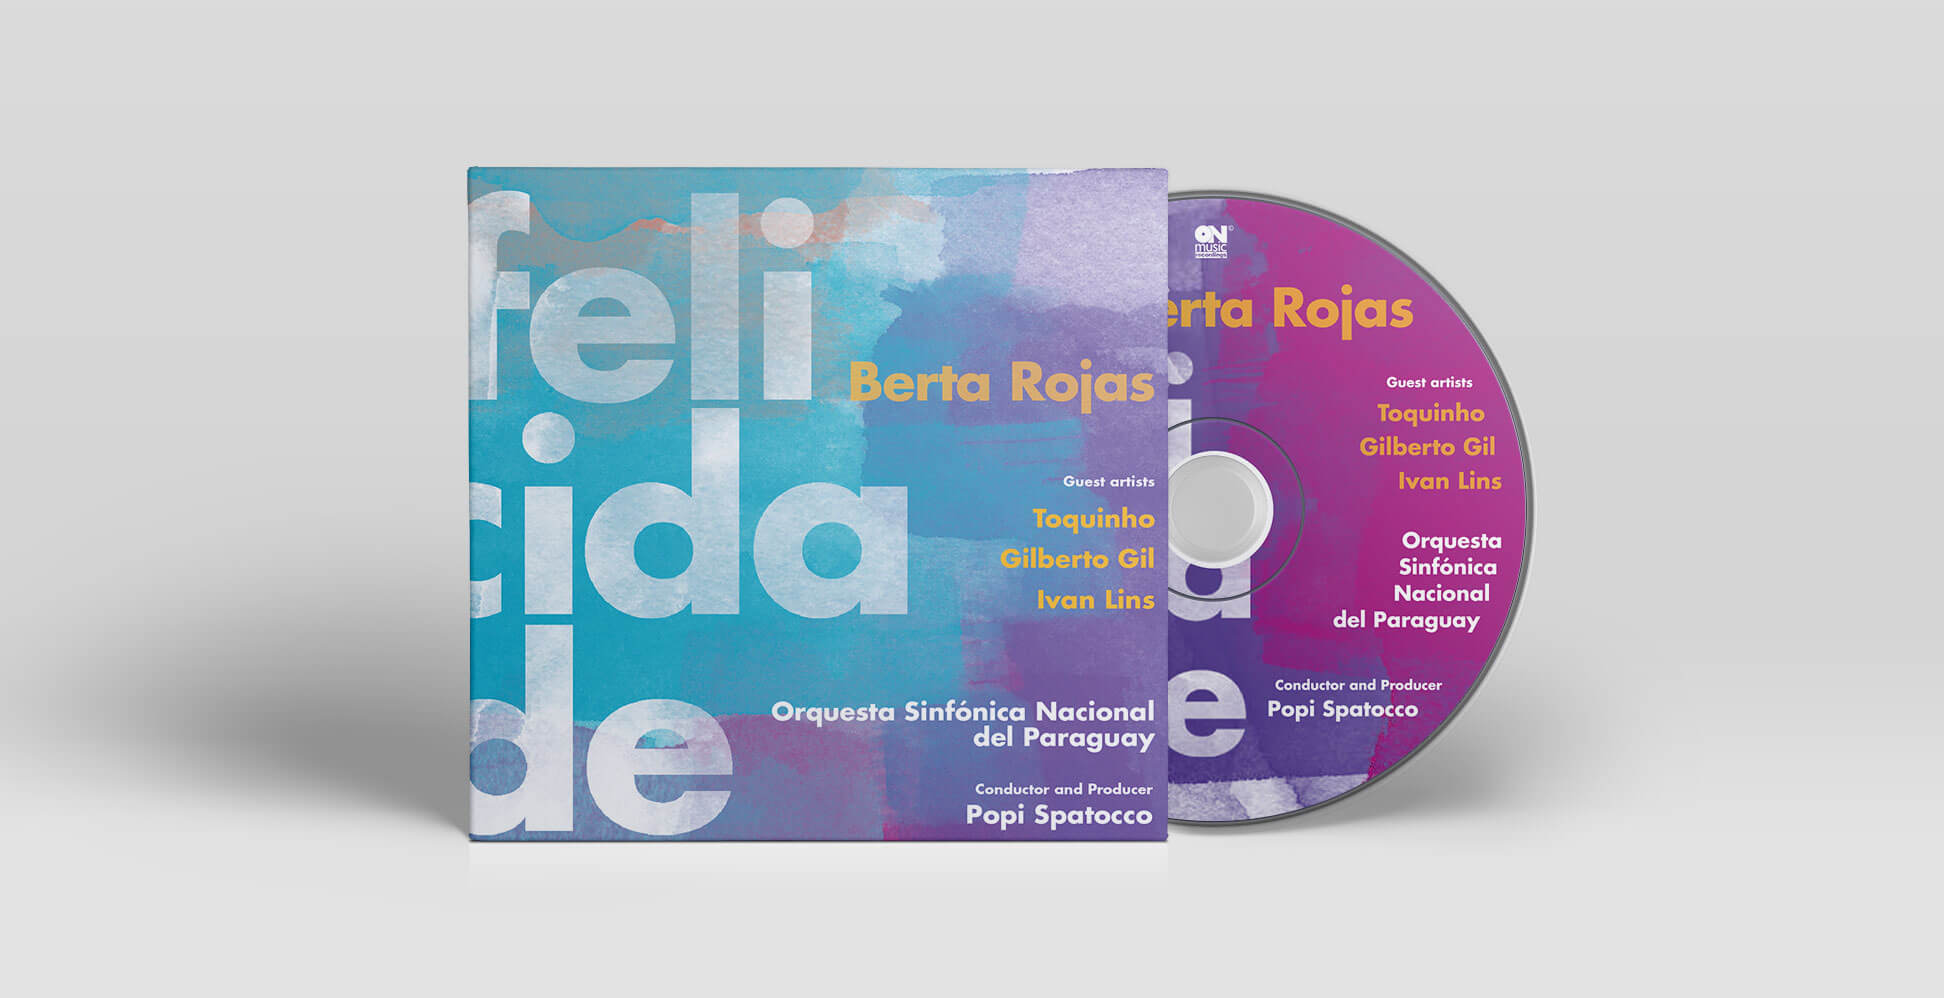 Berta Rojas - Felicidade